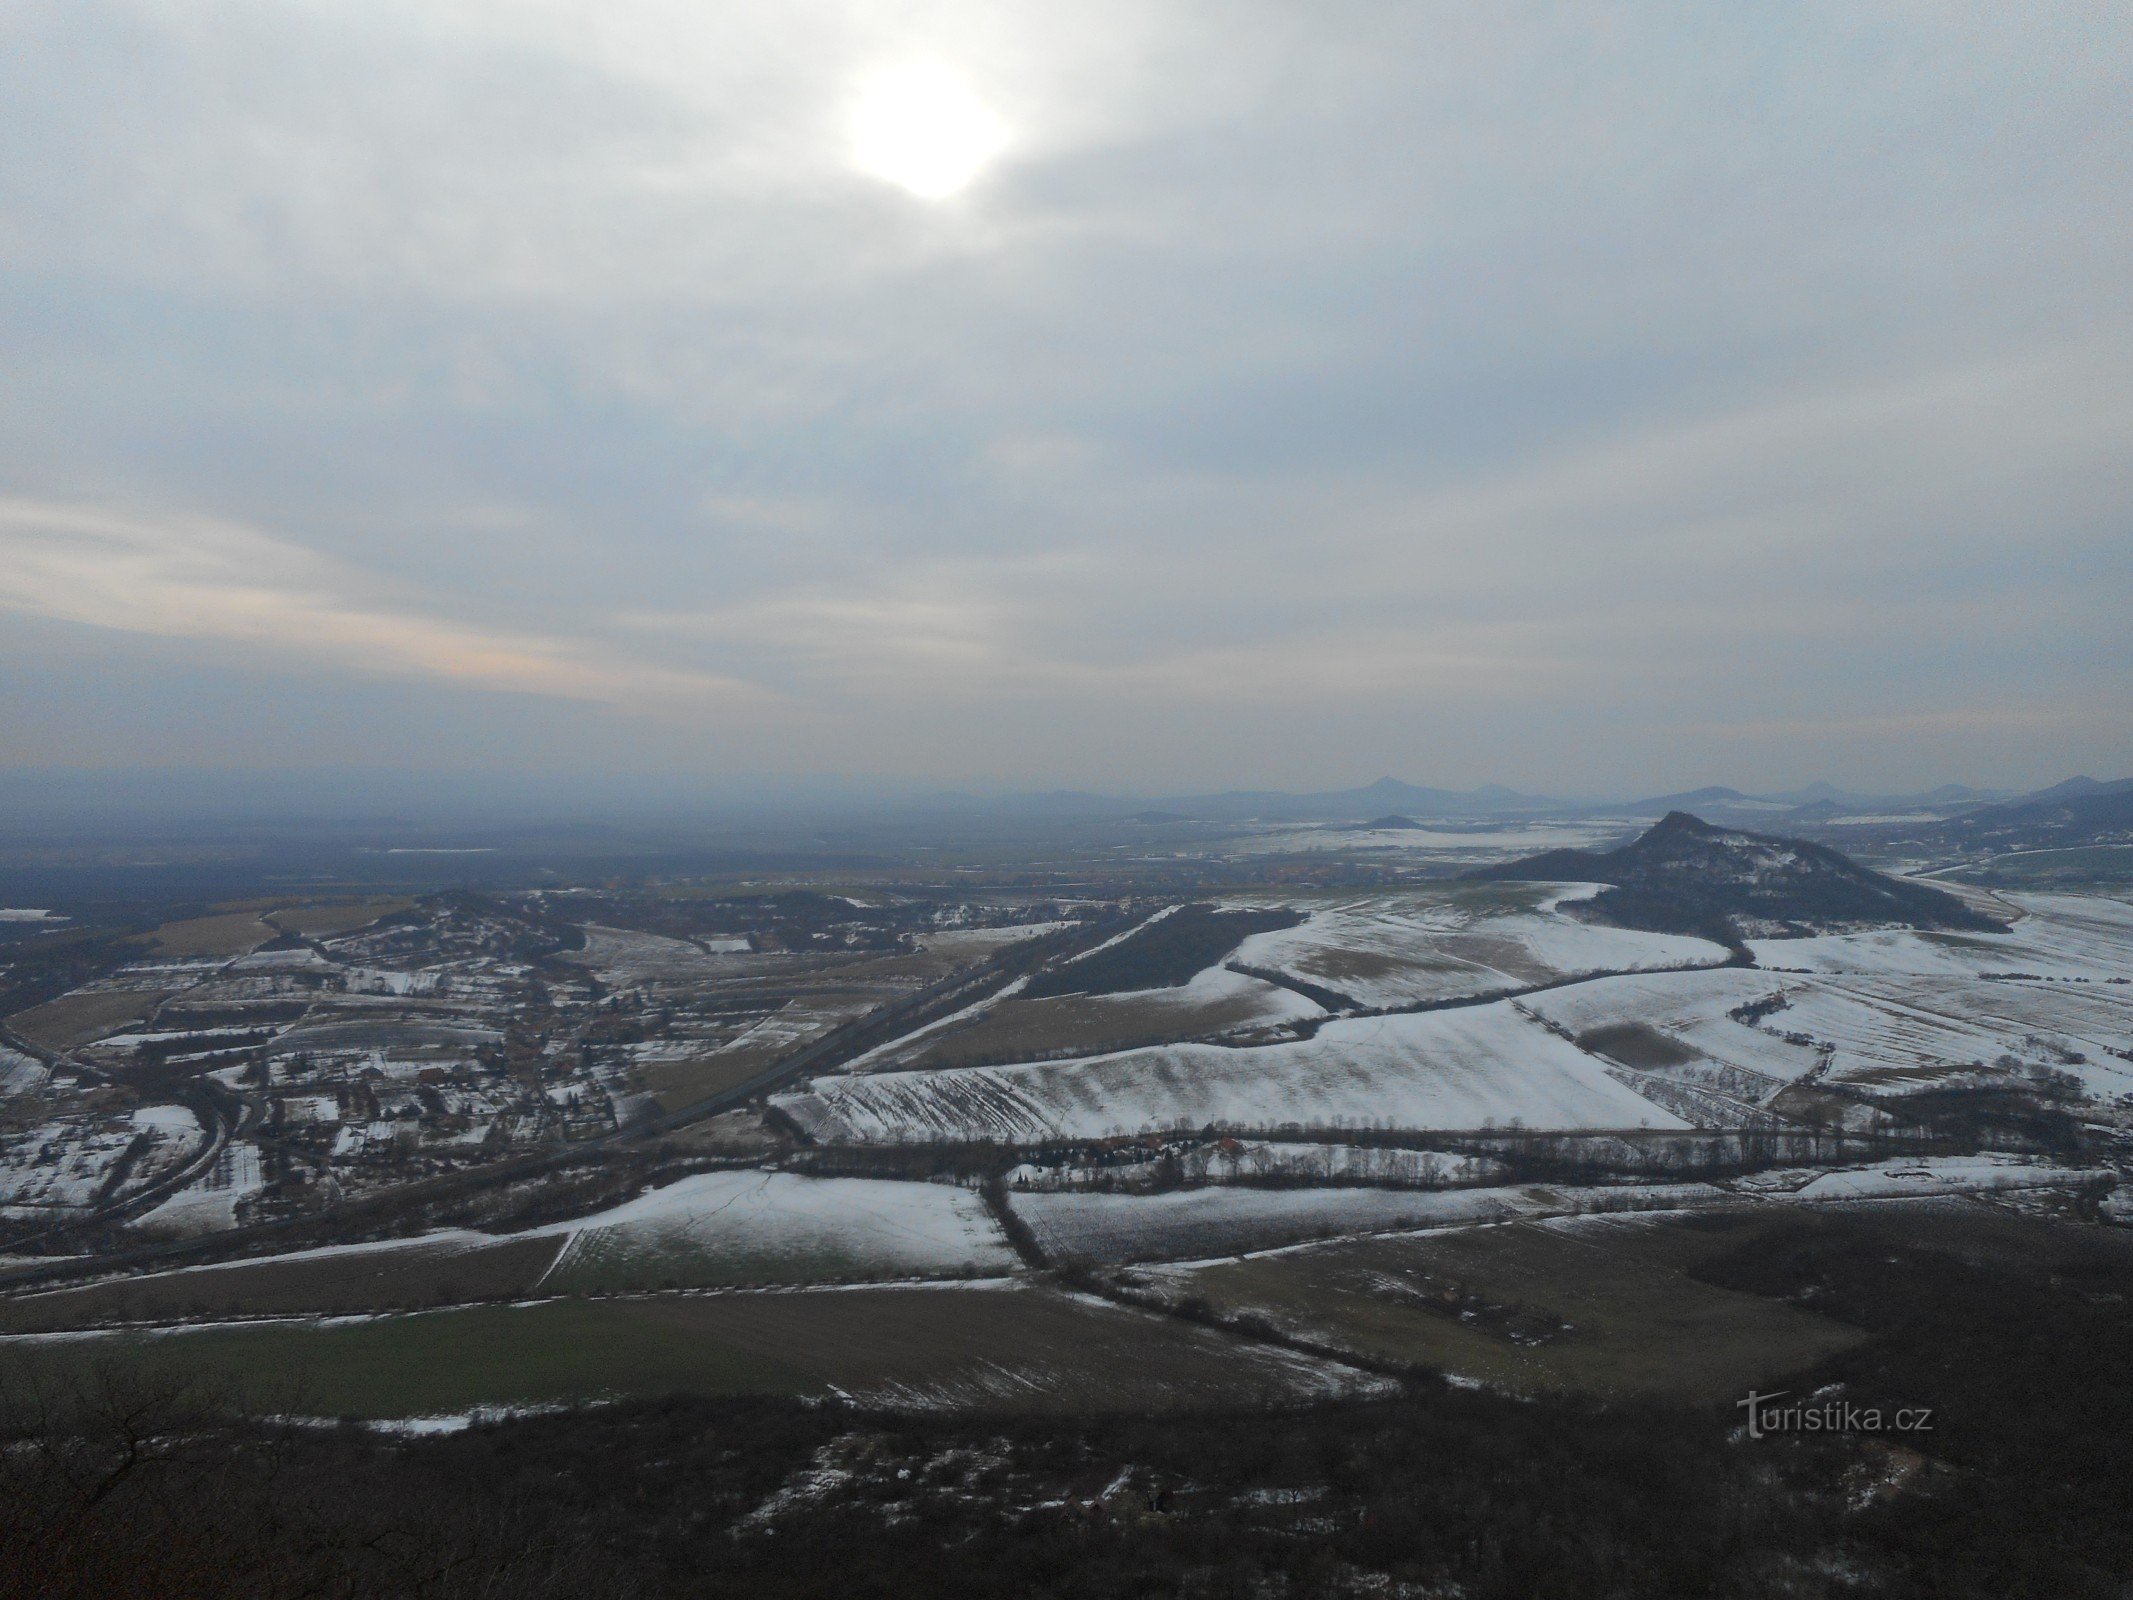 ...，向南，在右边我们可以看到 Vršetín 山。